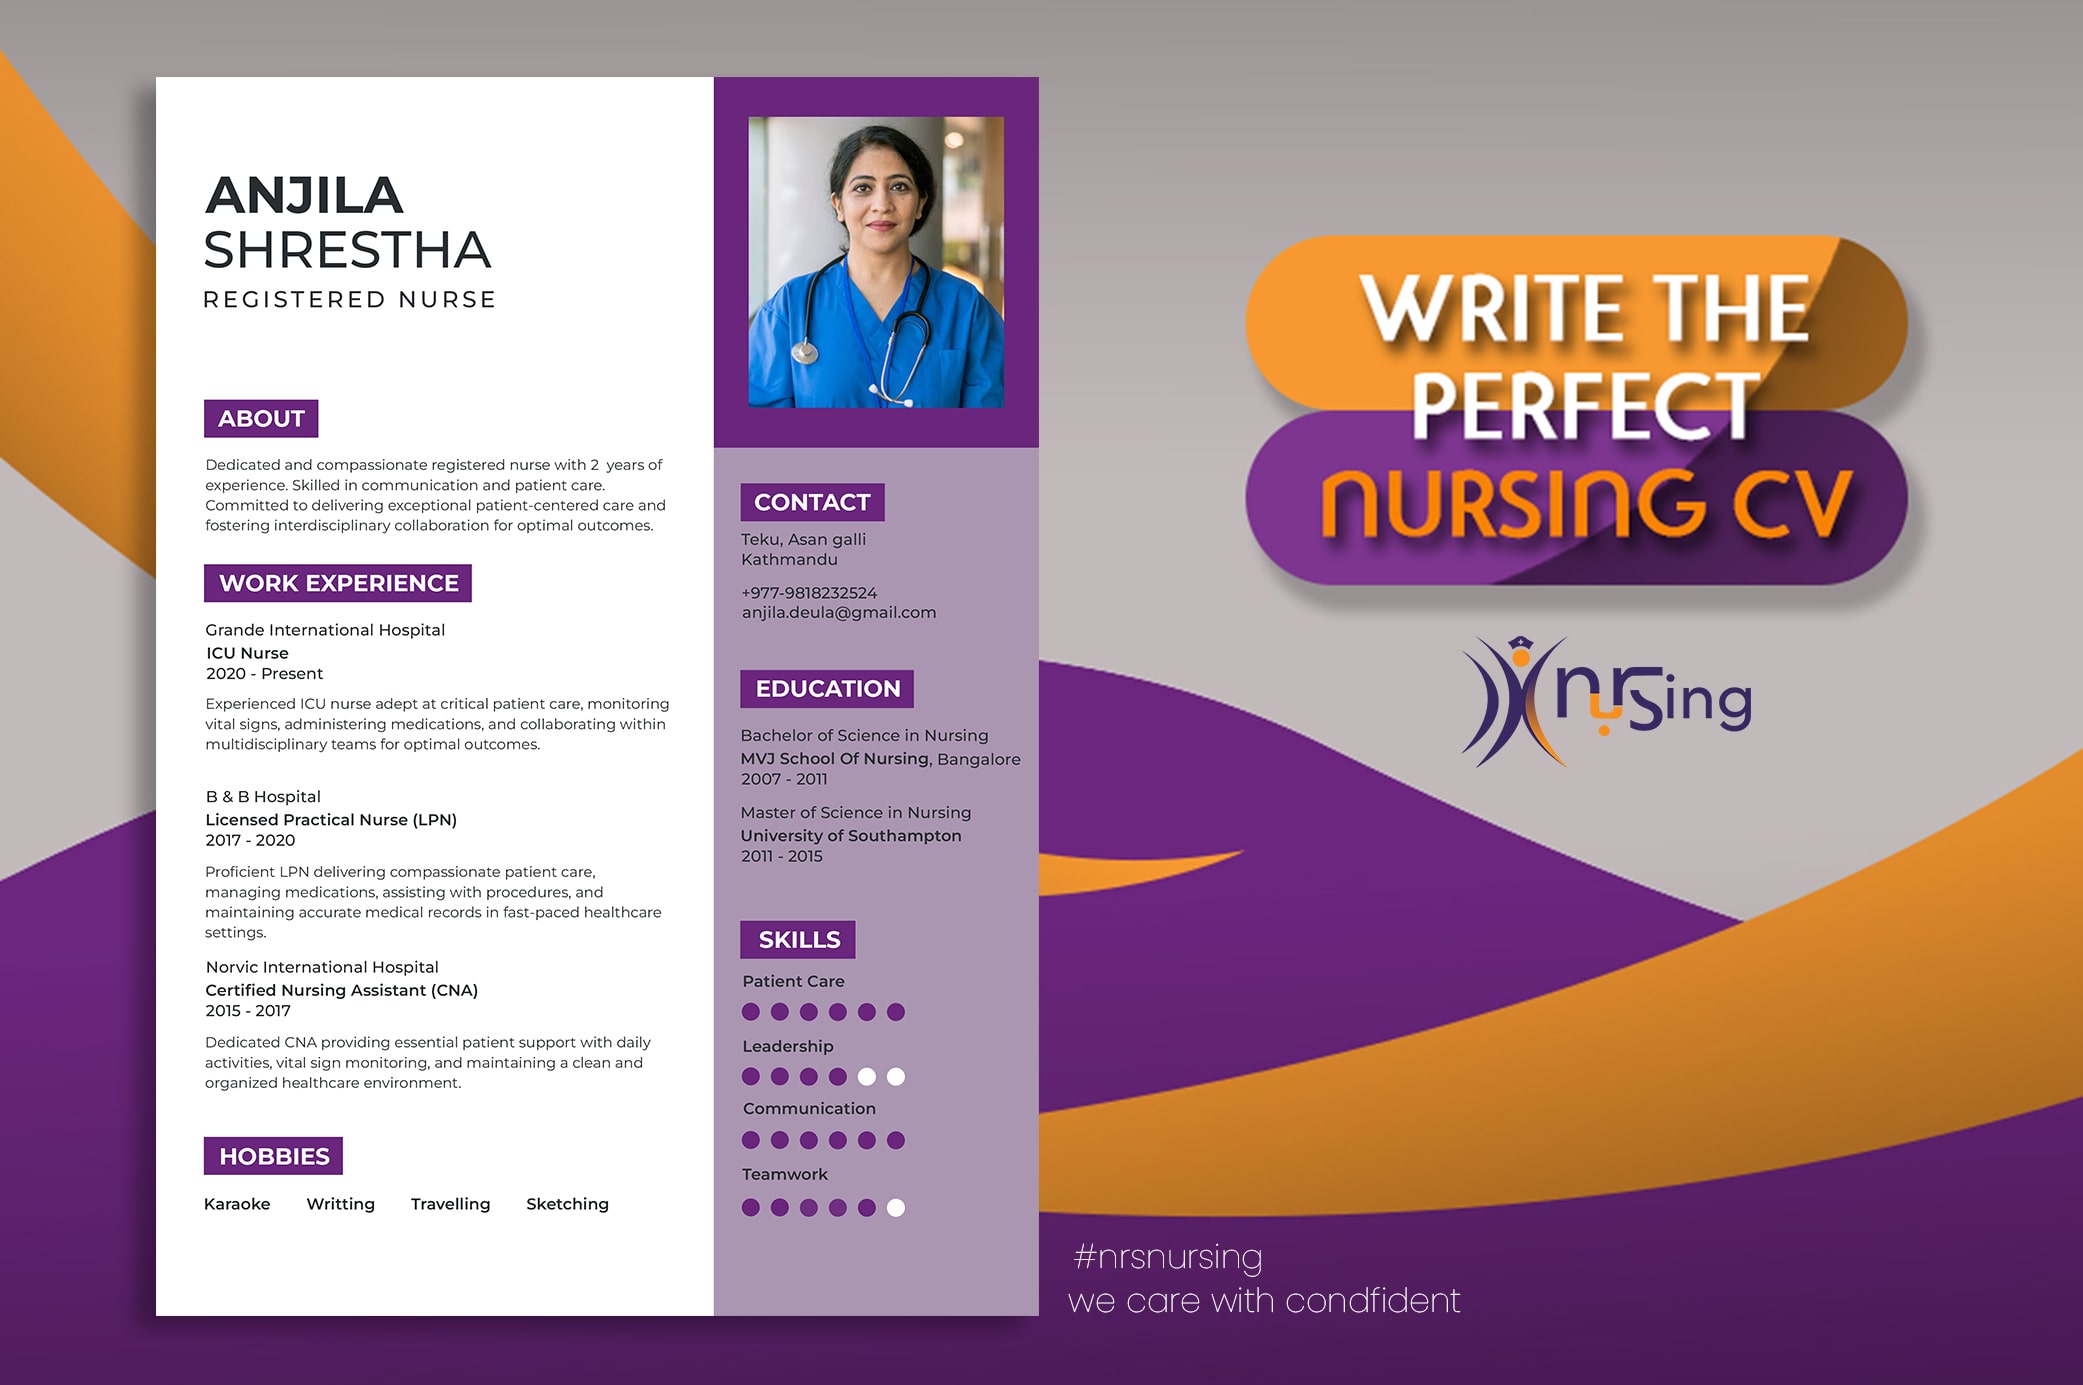 How to write the ideal nursing CV for nurses.